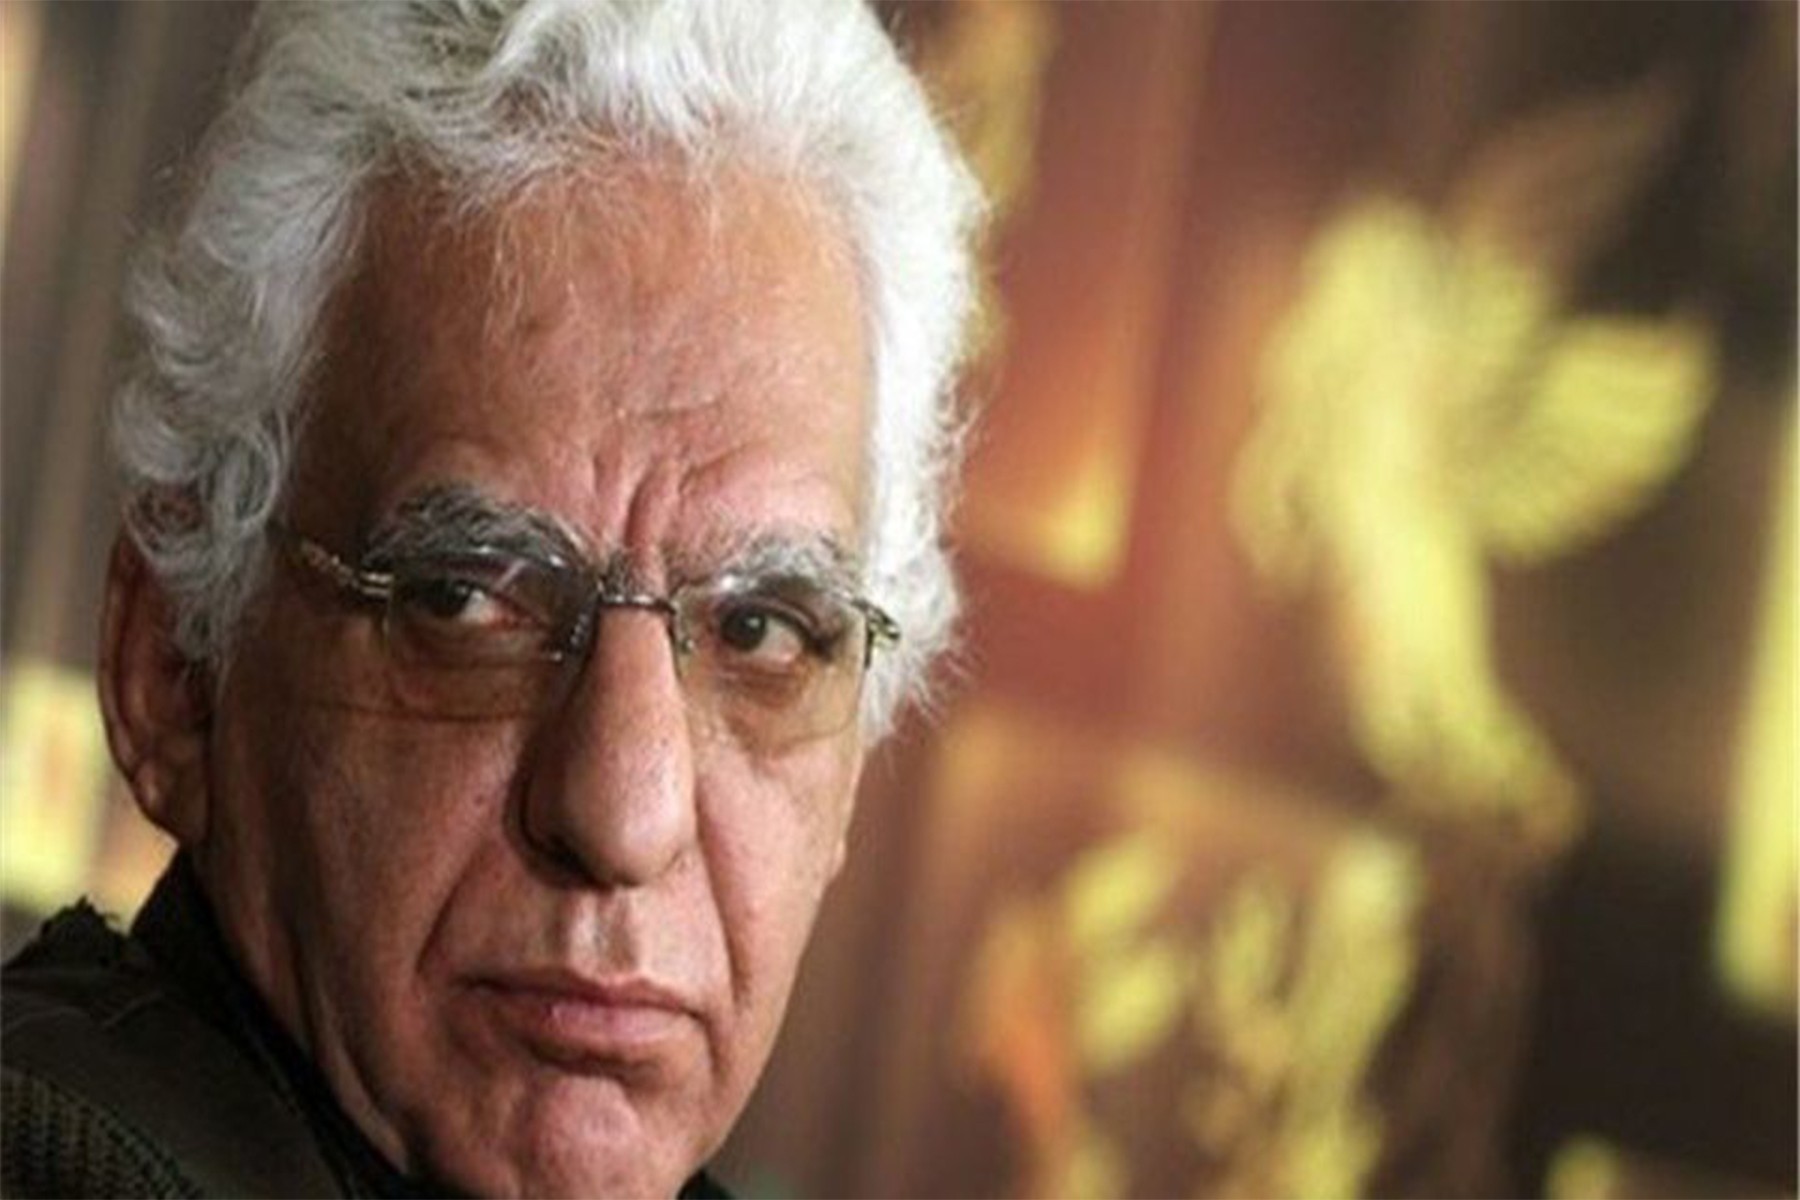 خواهر کیومرث پوراحمد کارگردان و هنرمند نامدار ایرانی: برادرم را شکنجه کردند و به دار آویختند